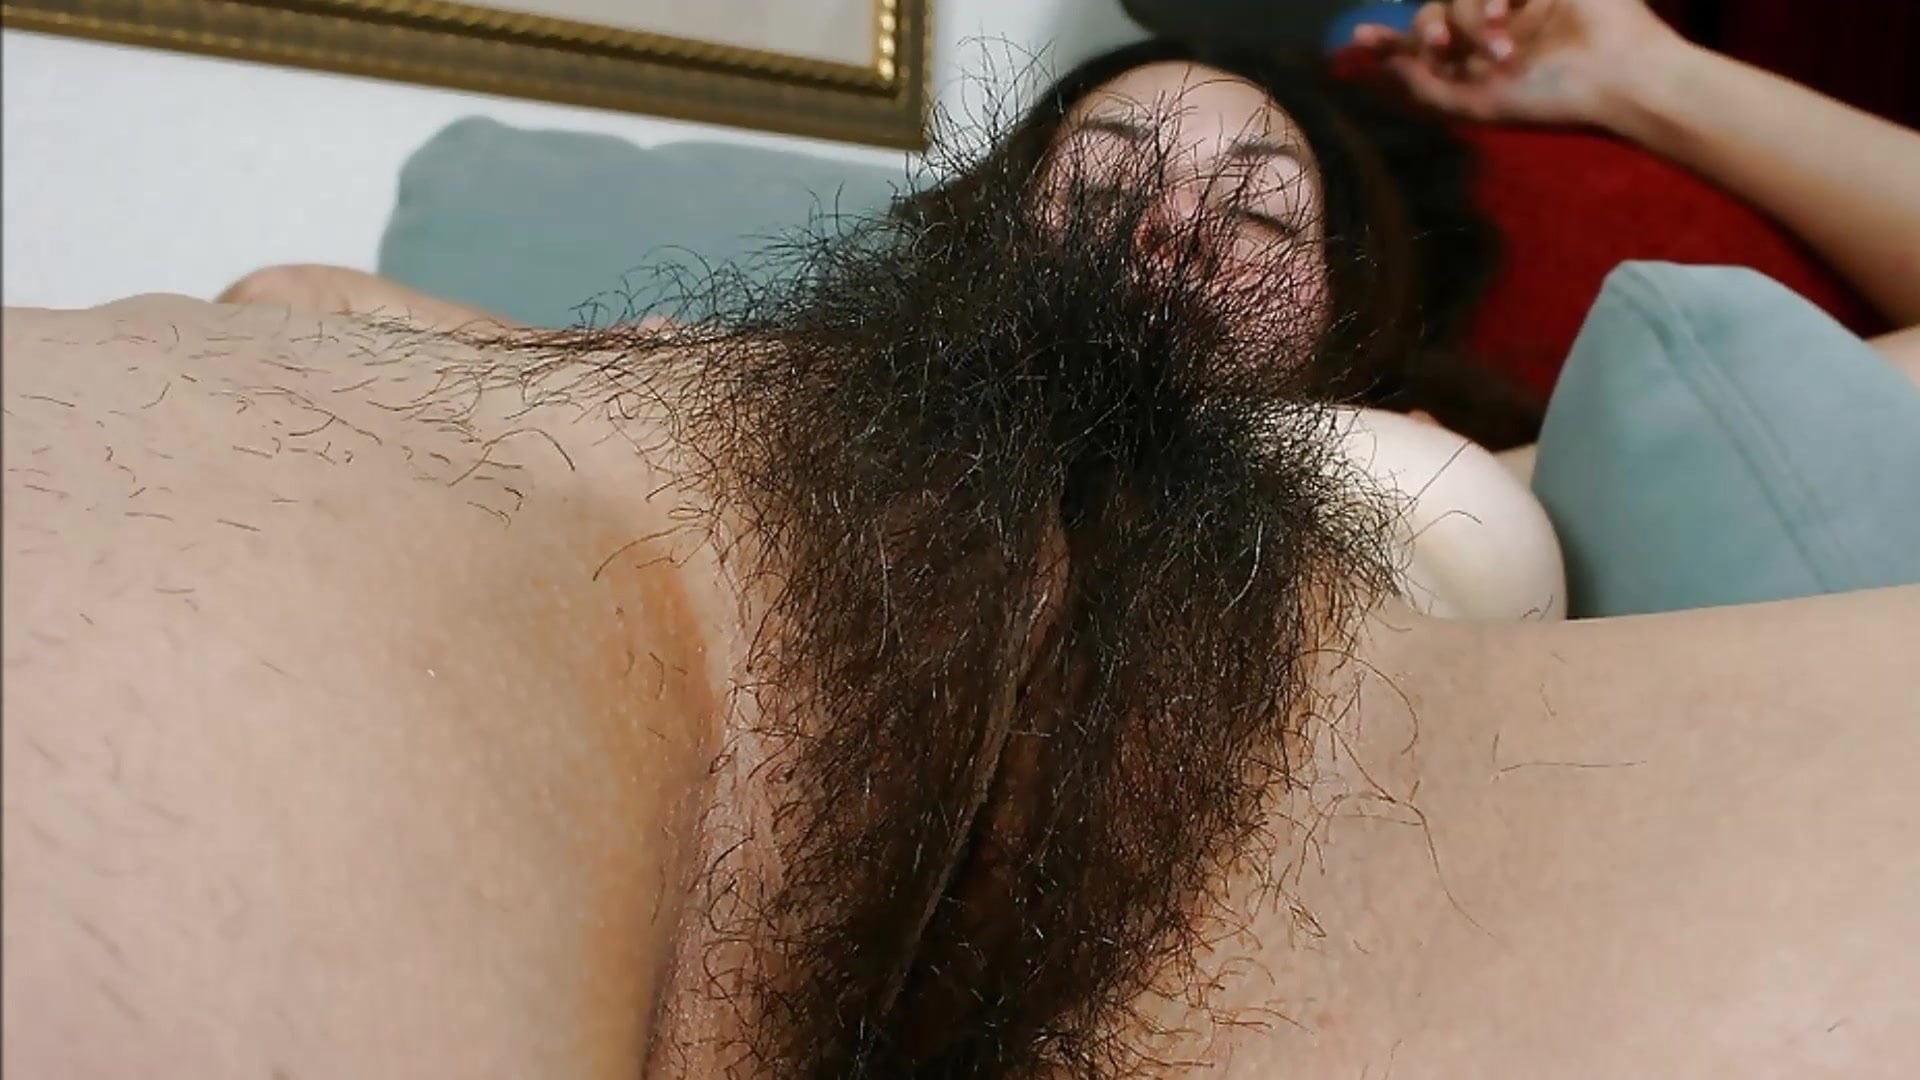 Фотки волосатых влагалищ для тех кто хочет познакомиться с женскими интимными местами поближе